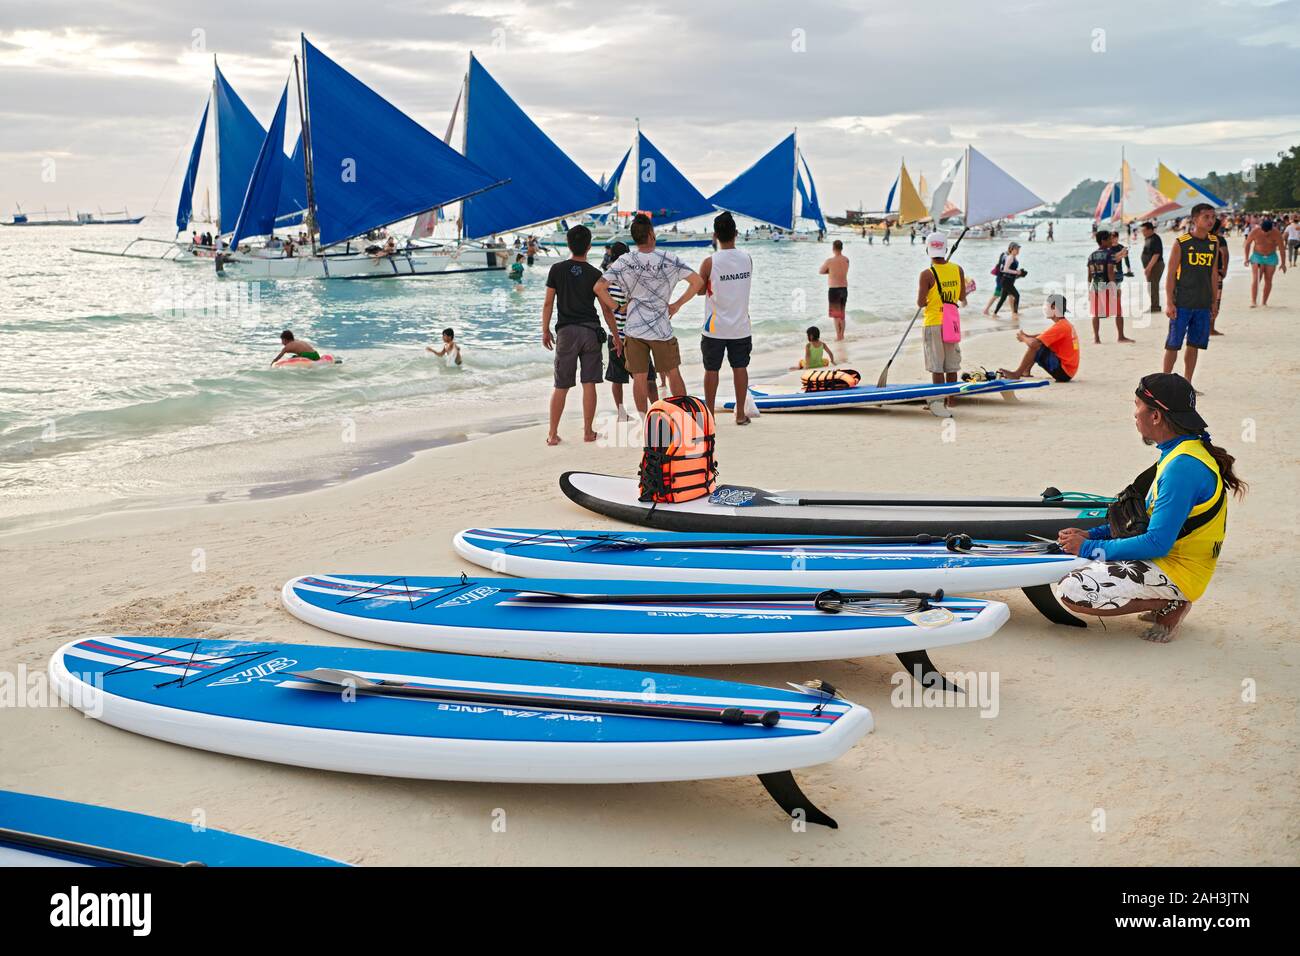 Il Boracay, Aklan Provincia, Filippine - 6 Gennaio 2018: Tramonto scenario della spiaggia bianca con paddle boards e barche a vela in attesa per i turisti Foto Stock